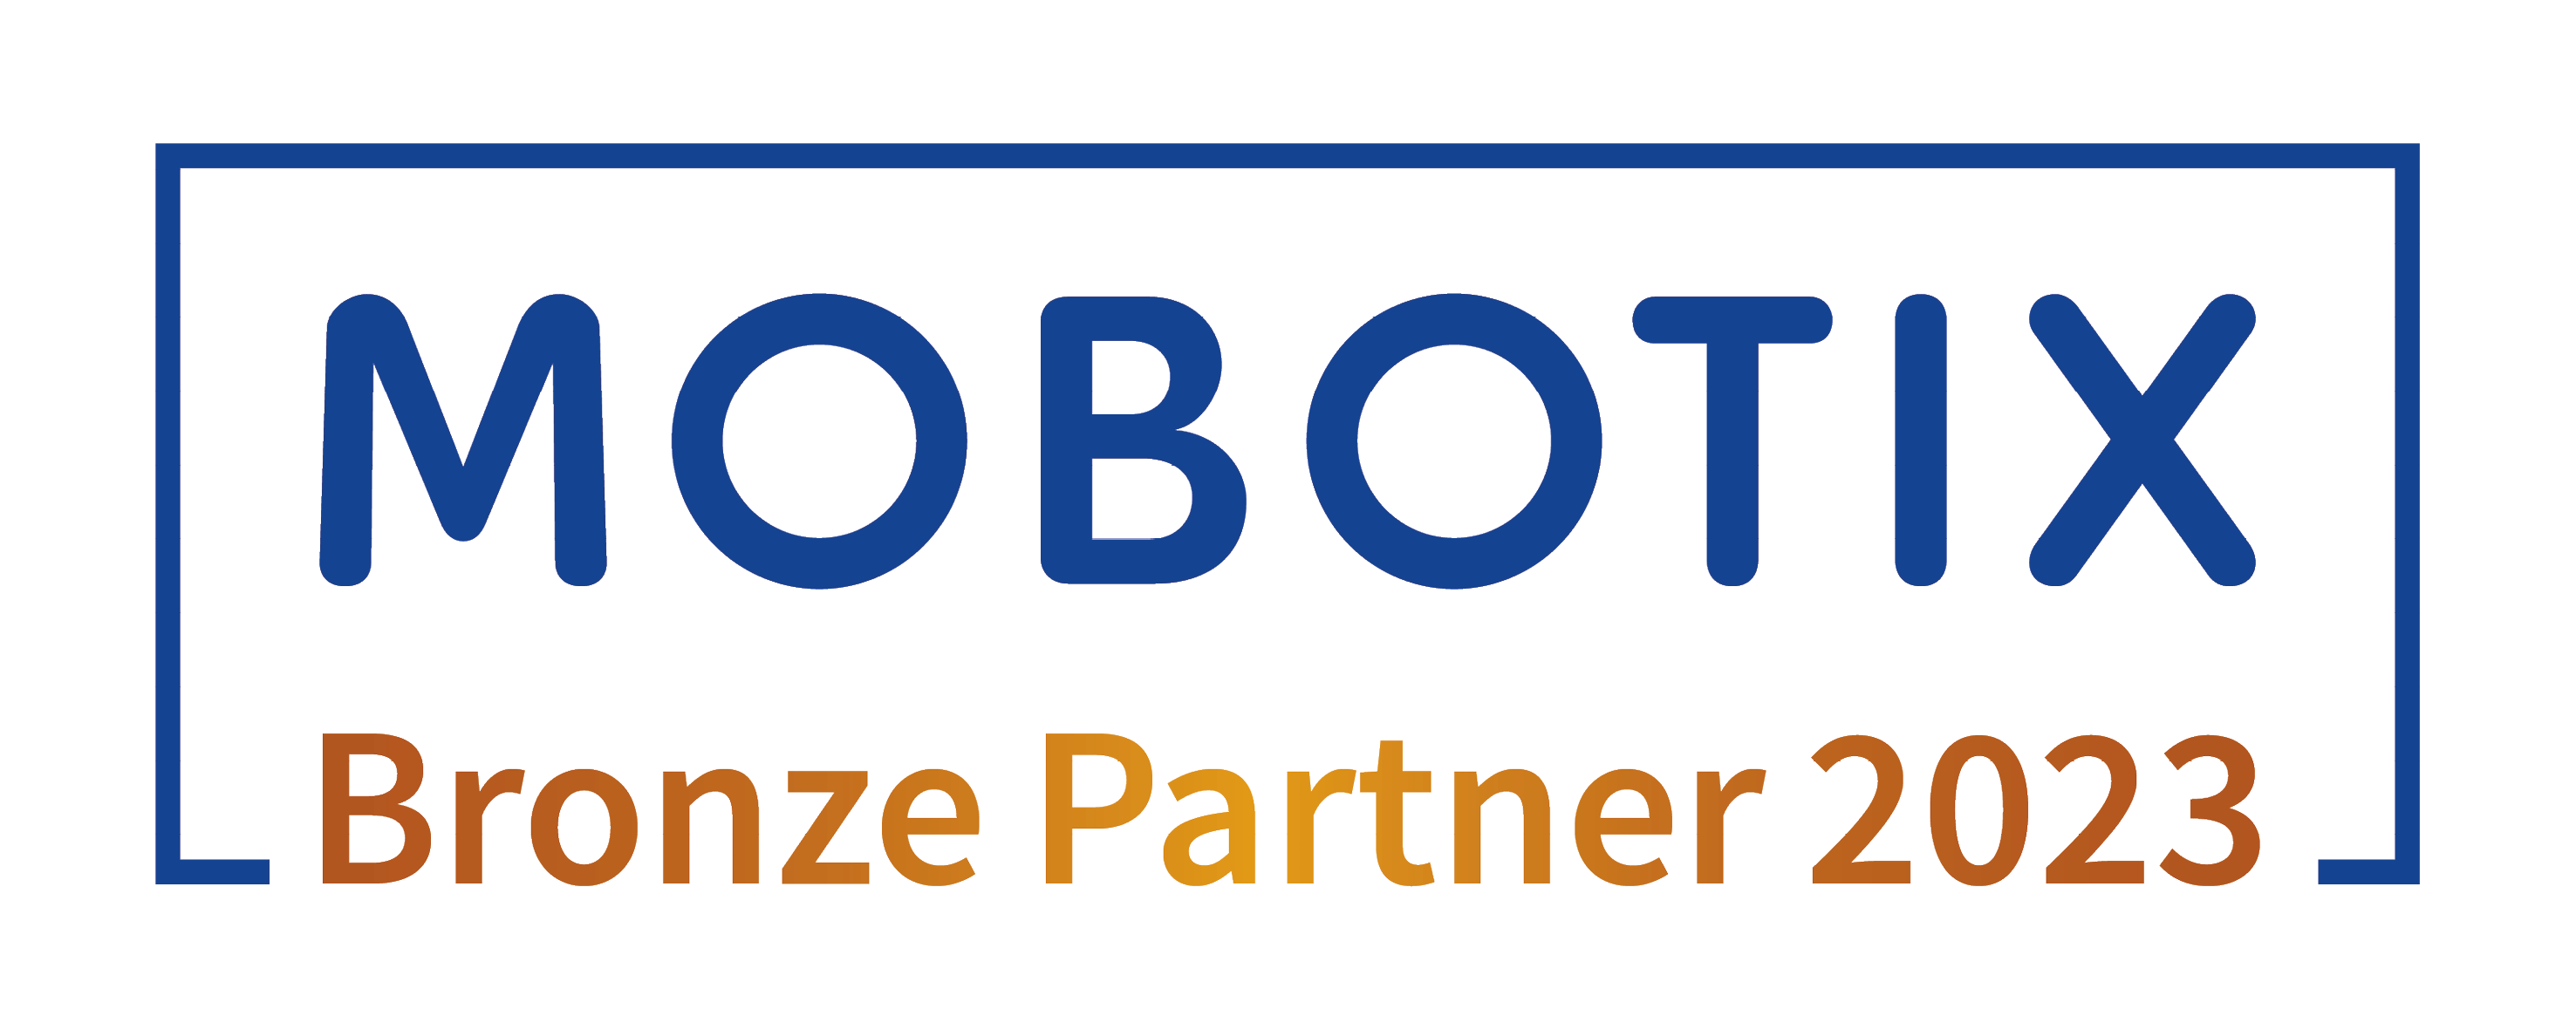 Mobotix Bronze Partner 2023